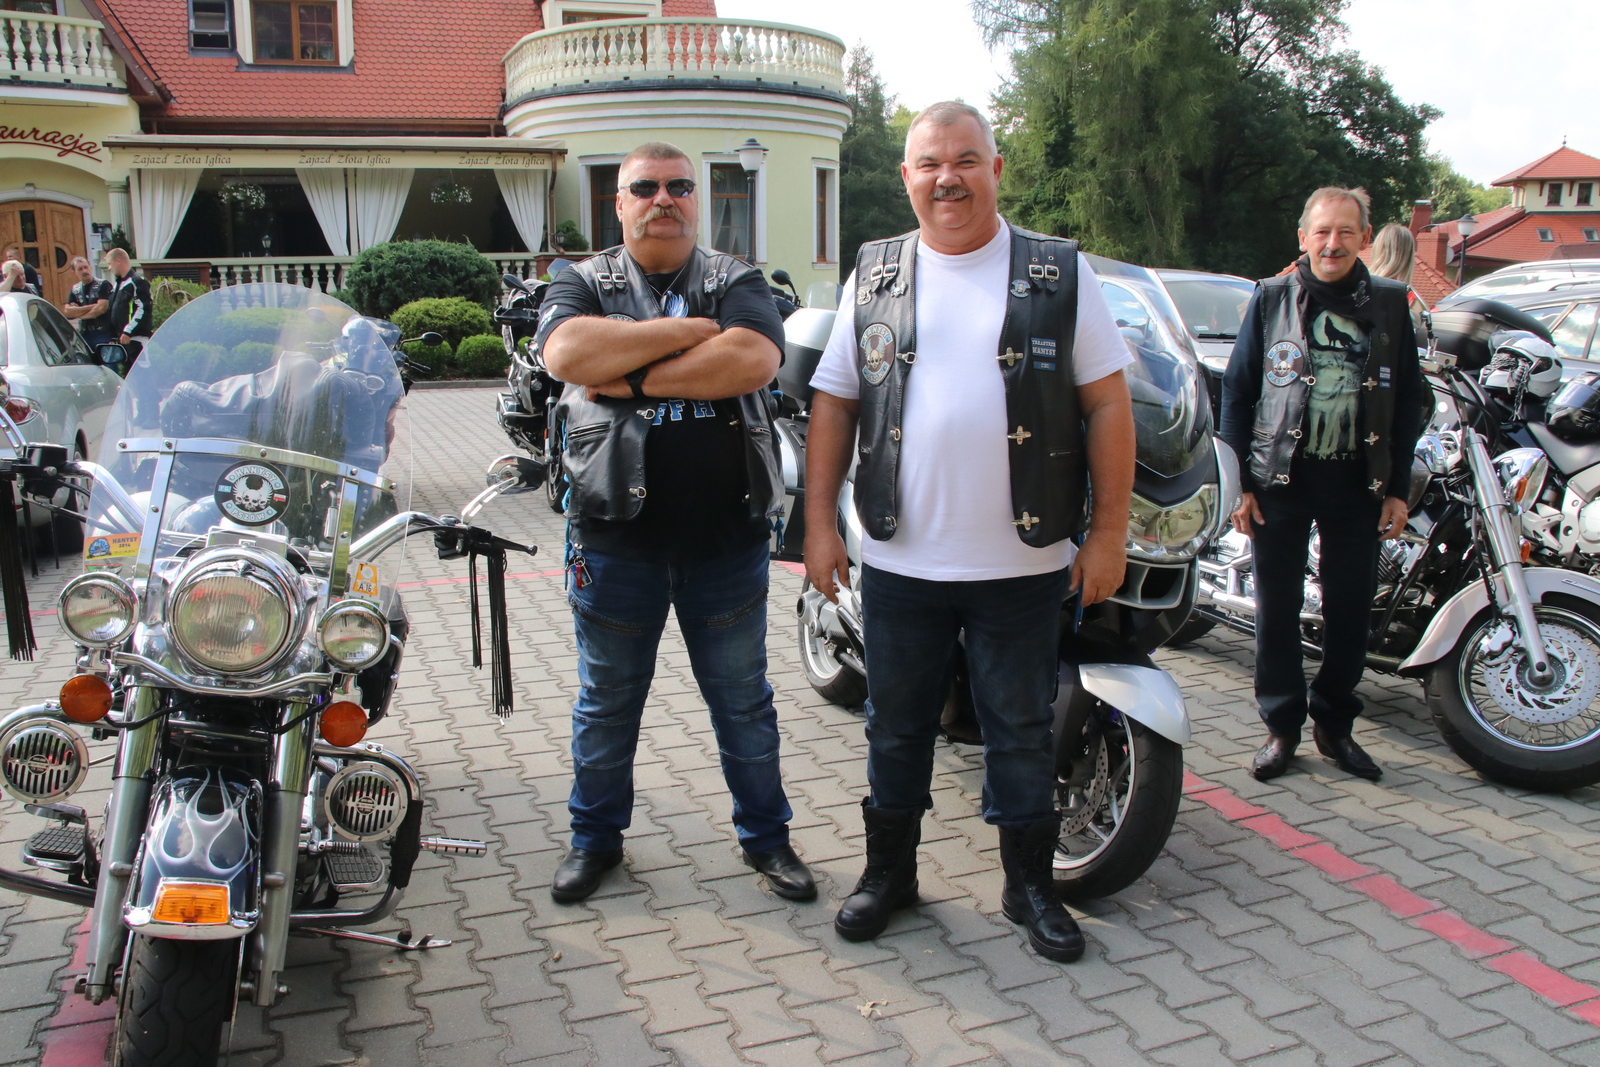 Janusz, Zbyszek i Sylwester reprezentowali w Pogrzebieniu klub motocyklowy Hanysy z Pszowa. W rozmowie z Nowinami przypomnieli, że niebawem organizują po raz kolejny swój zlot. Odbędzie się w dniach 12-14 sierpnia, na pszowskiej strzelnicy